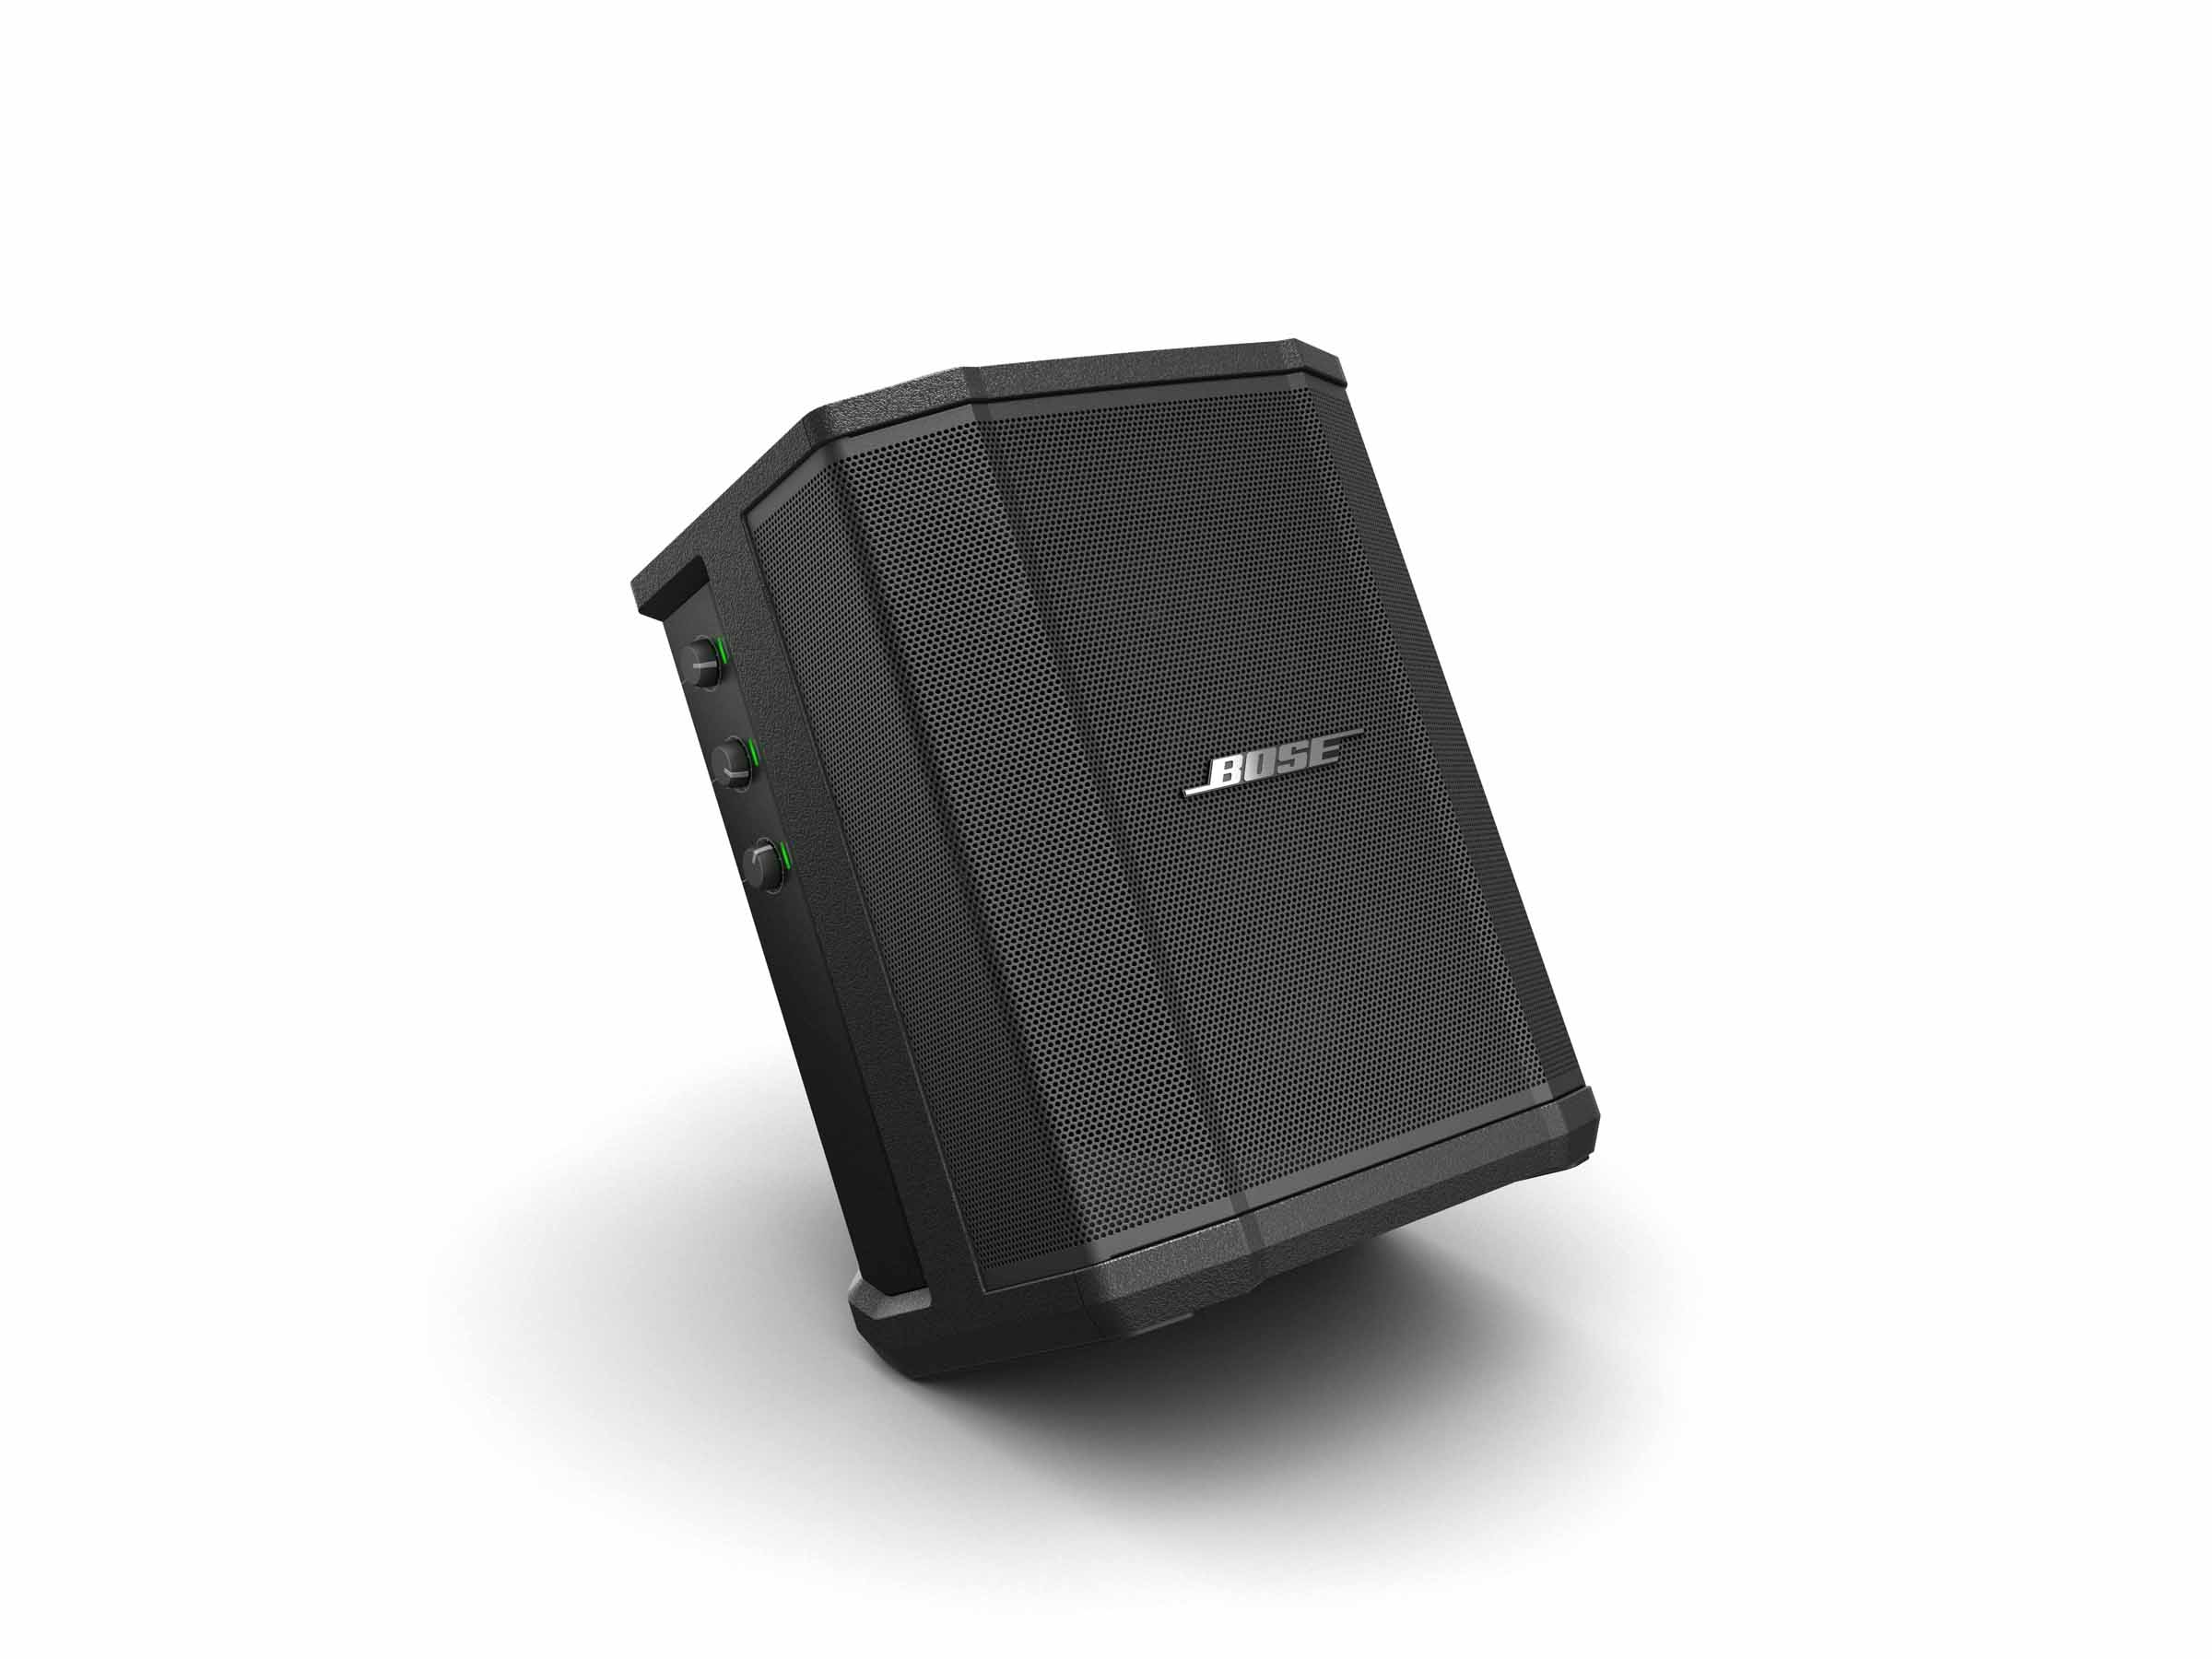 Review: Bose S1 Pro Portable PA